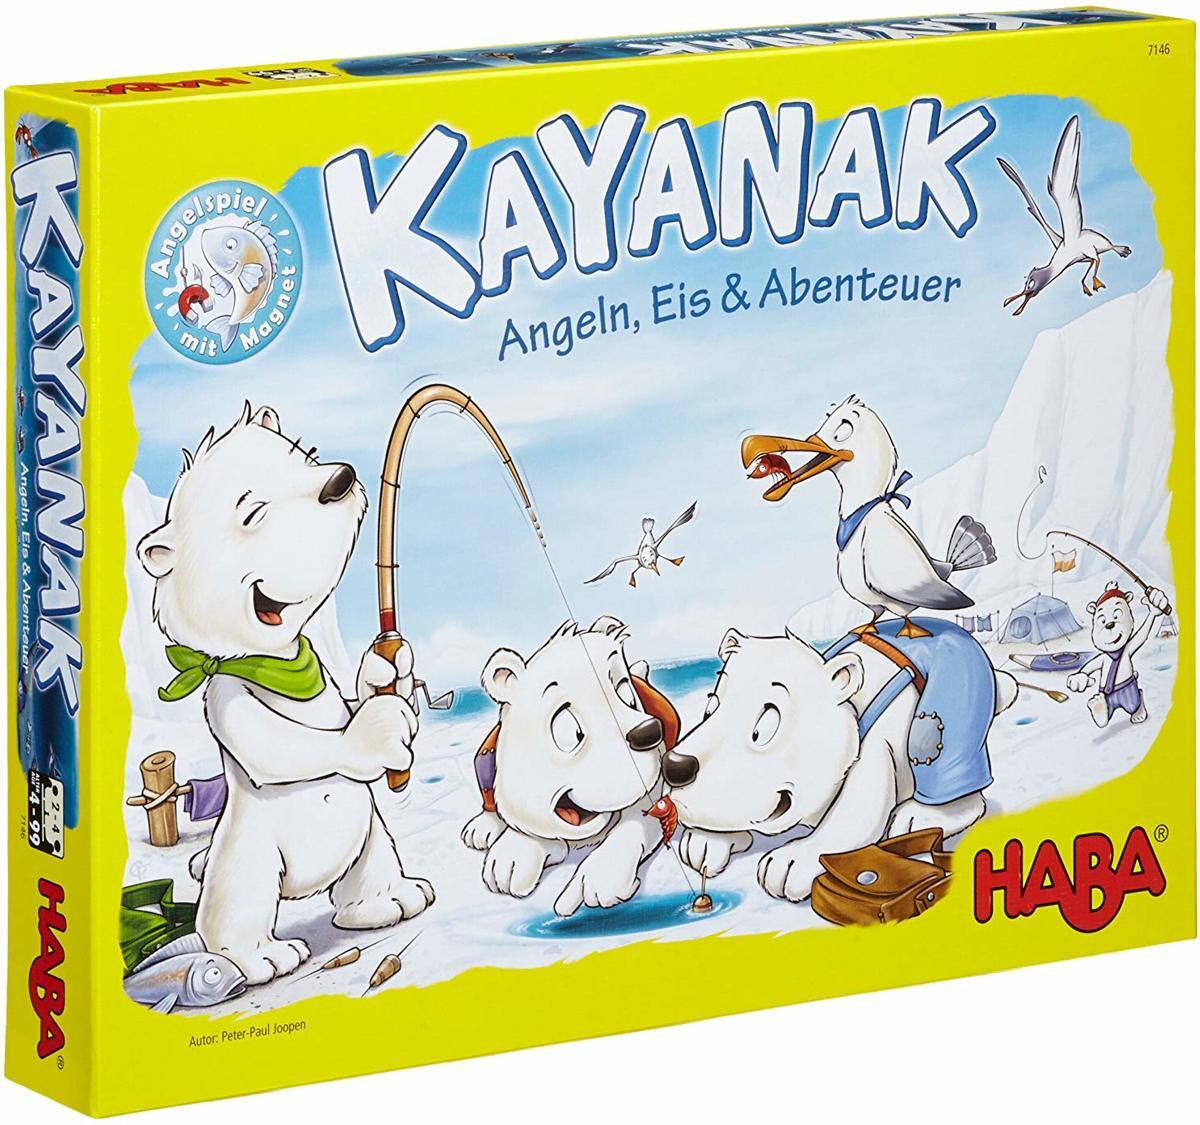 Haba Spiel - Kayanak - Angeln, Eis & abenteuer (Duits) = Frans 7325 - Nederlands 7324